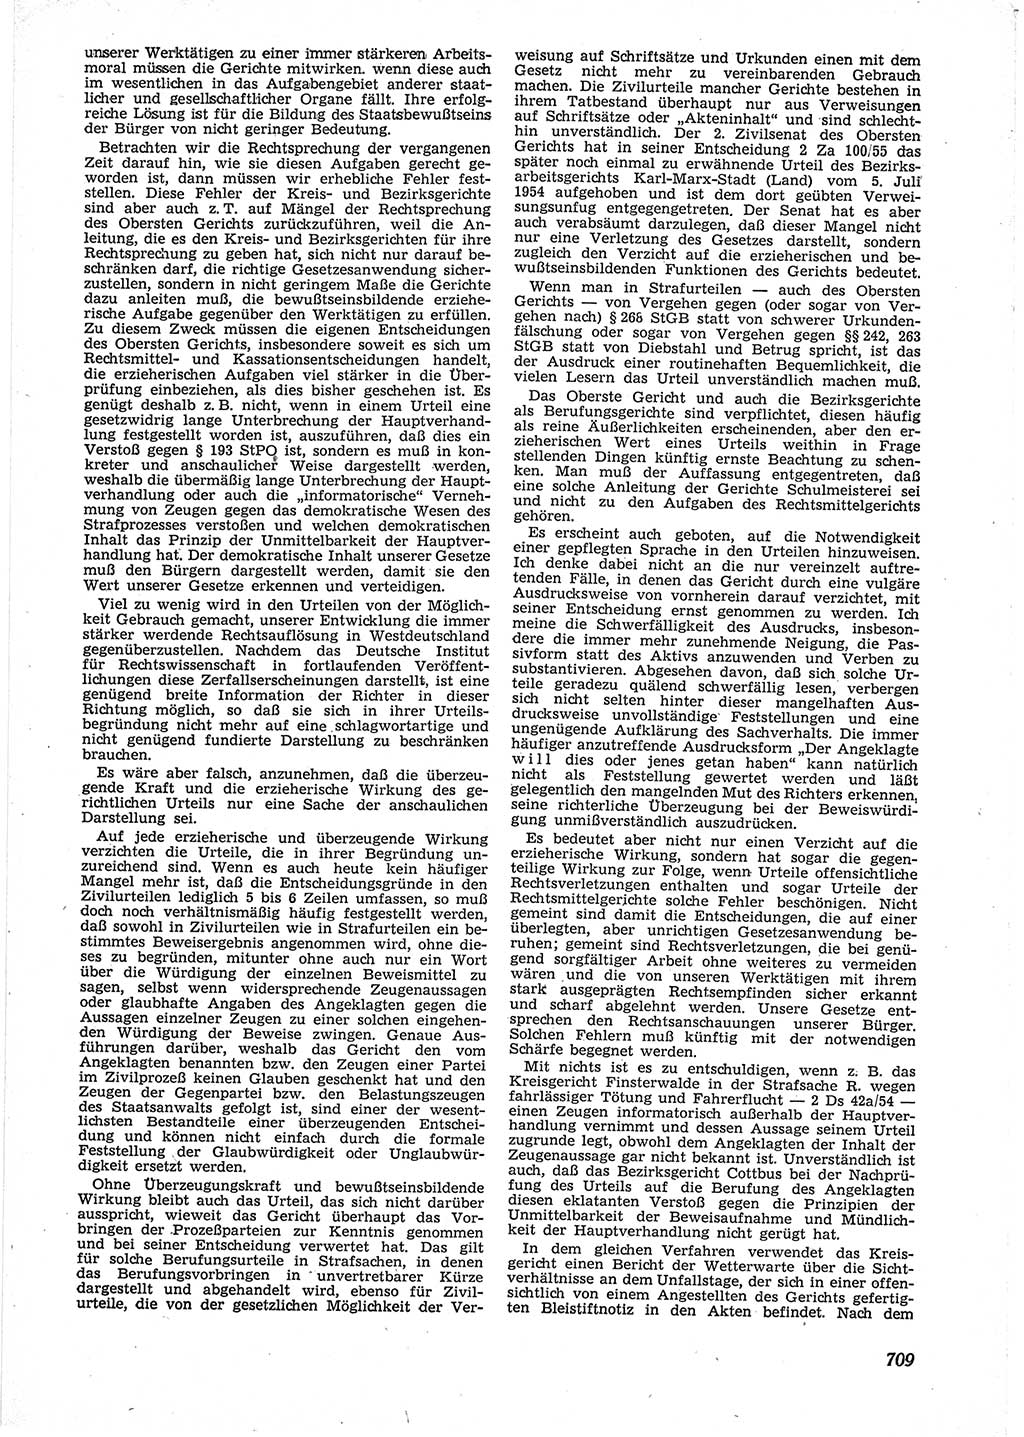 Neue Justiz (NJ), Zeitschrift für Recht und Rechtswissenschaft [Deutsche Demokratische Republik (DDR)], 9. Jahrgang 1955, Seite 709 (NJ DDR 1955, S. 709)